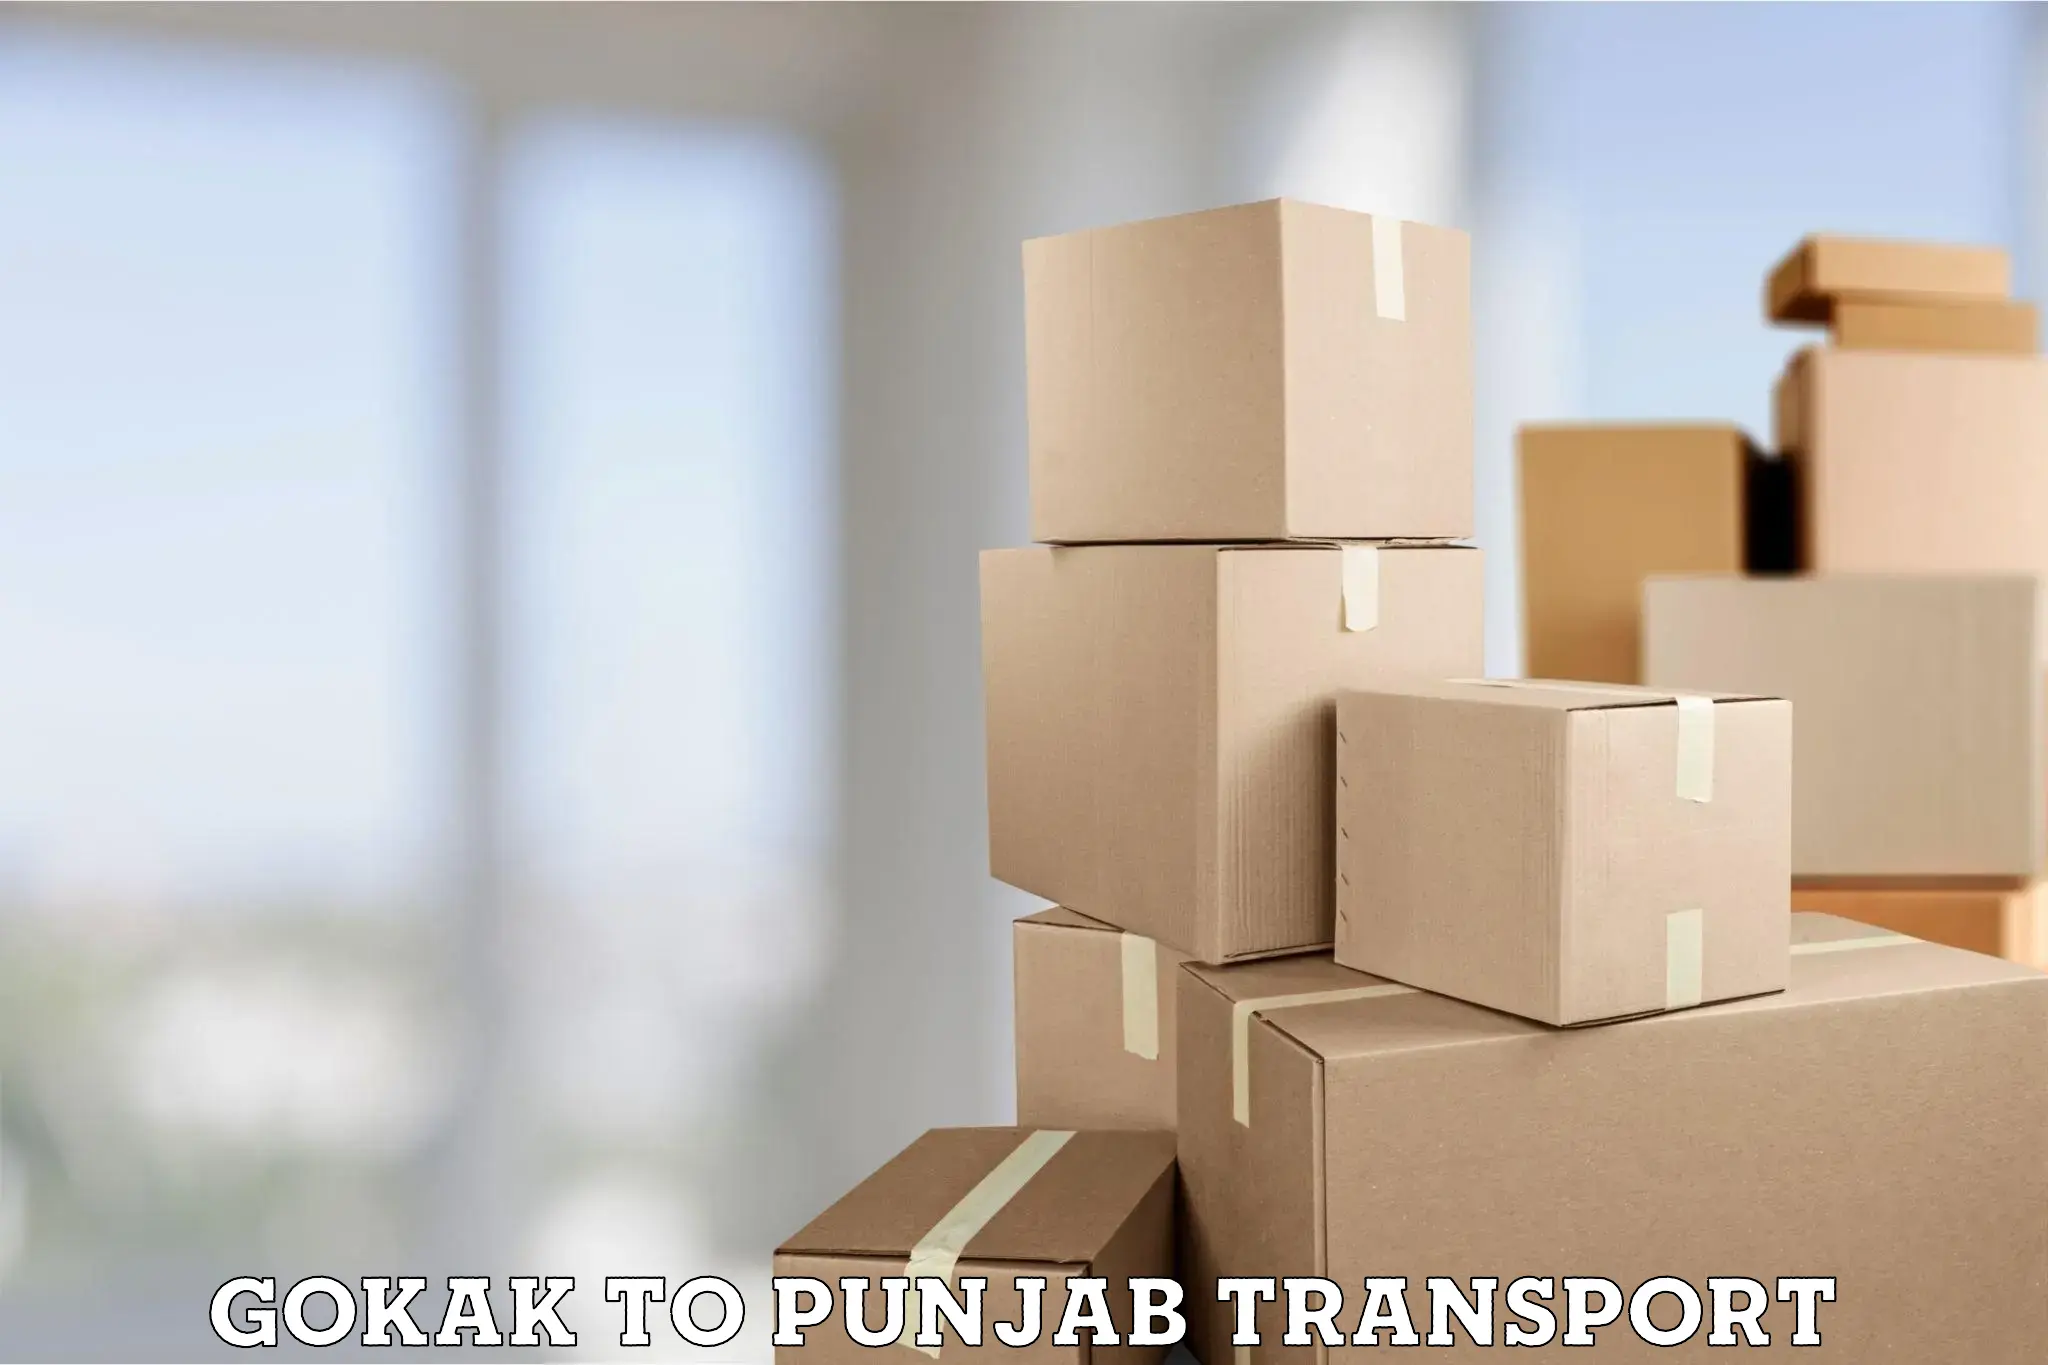 Luggage transport services Gokak to Punjab